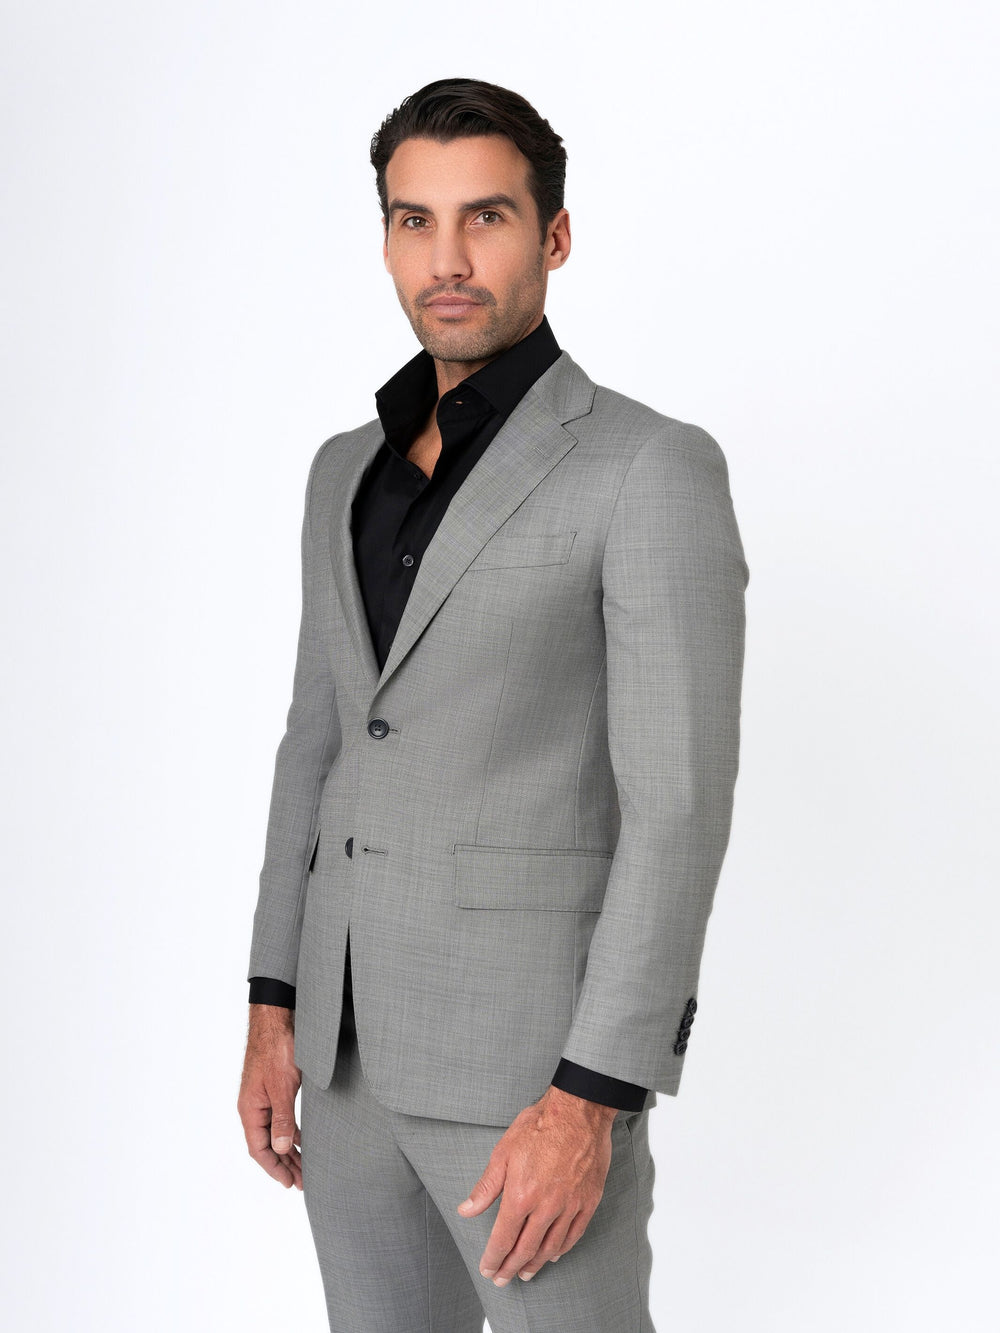 Grey Sharkskin Suit